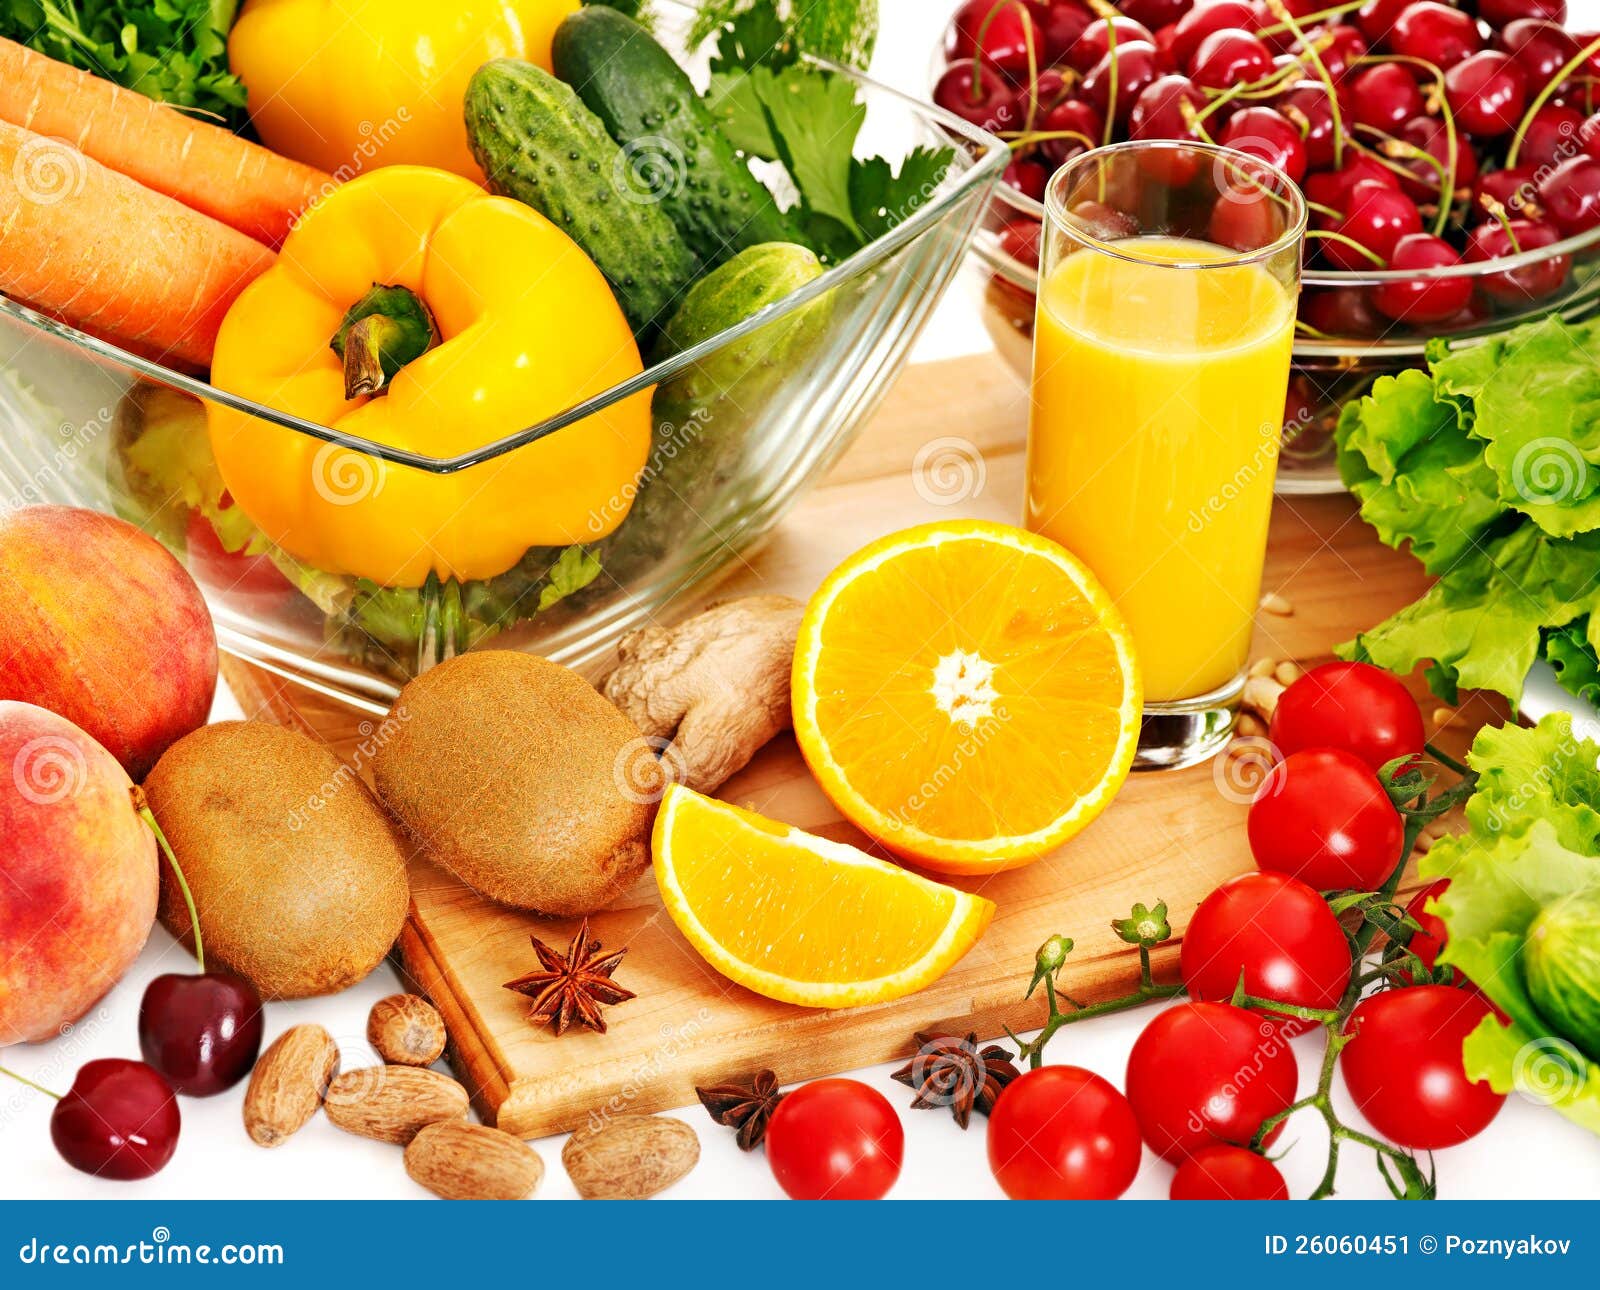 Витамин с летом можно. Здоровое питание. Овощи и фрукты. Полезные продукты. Правильное питание фрукты.